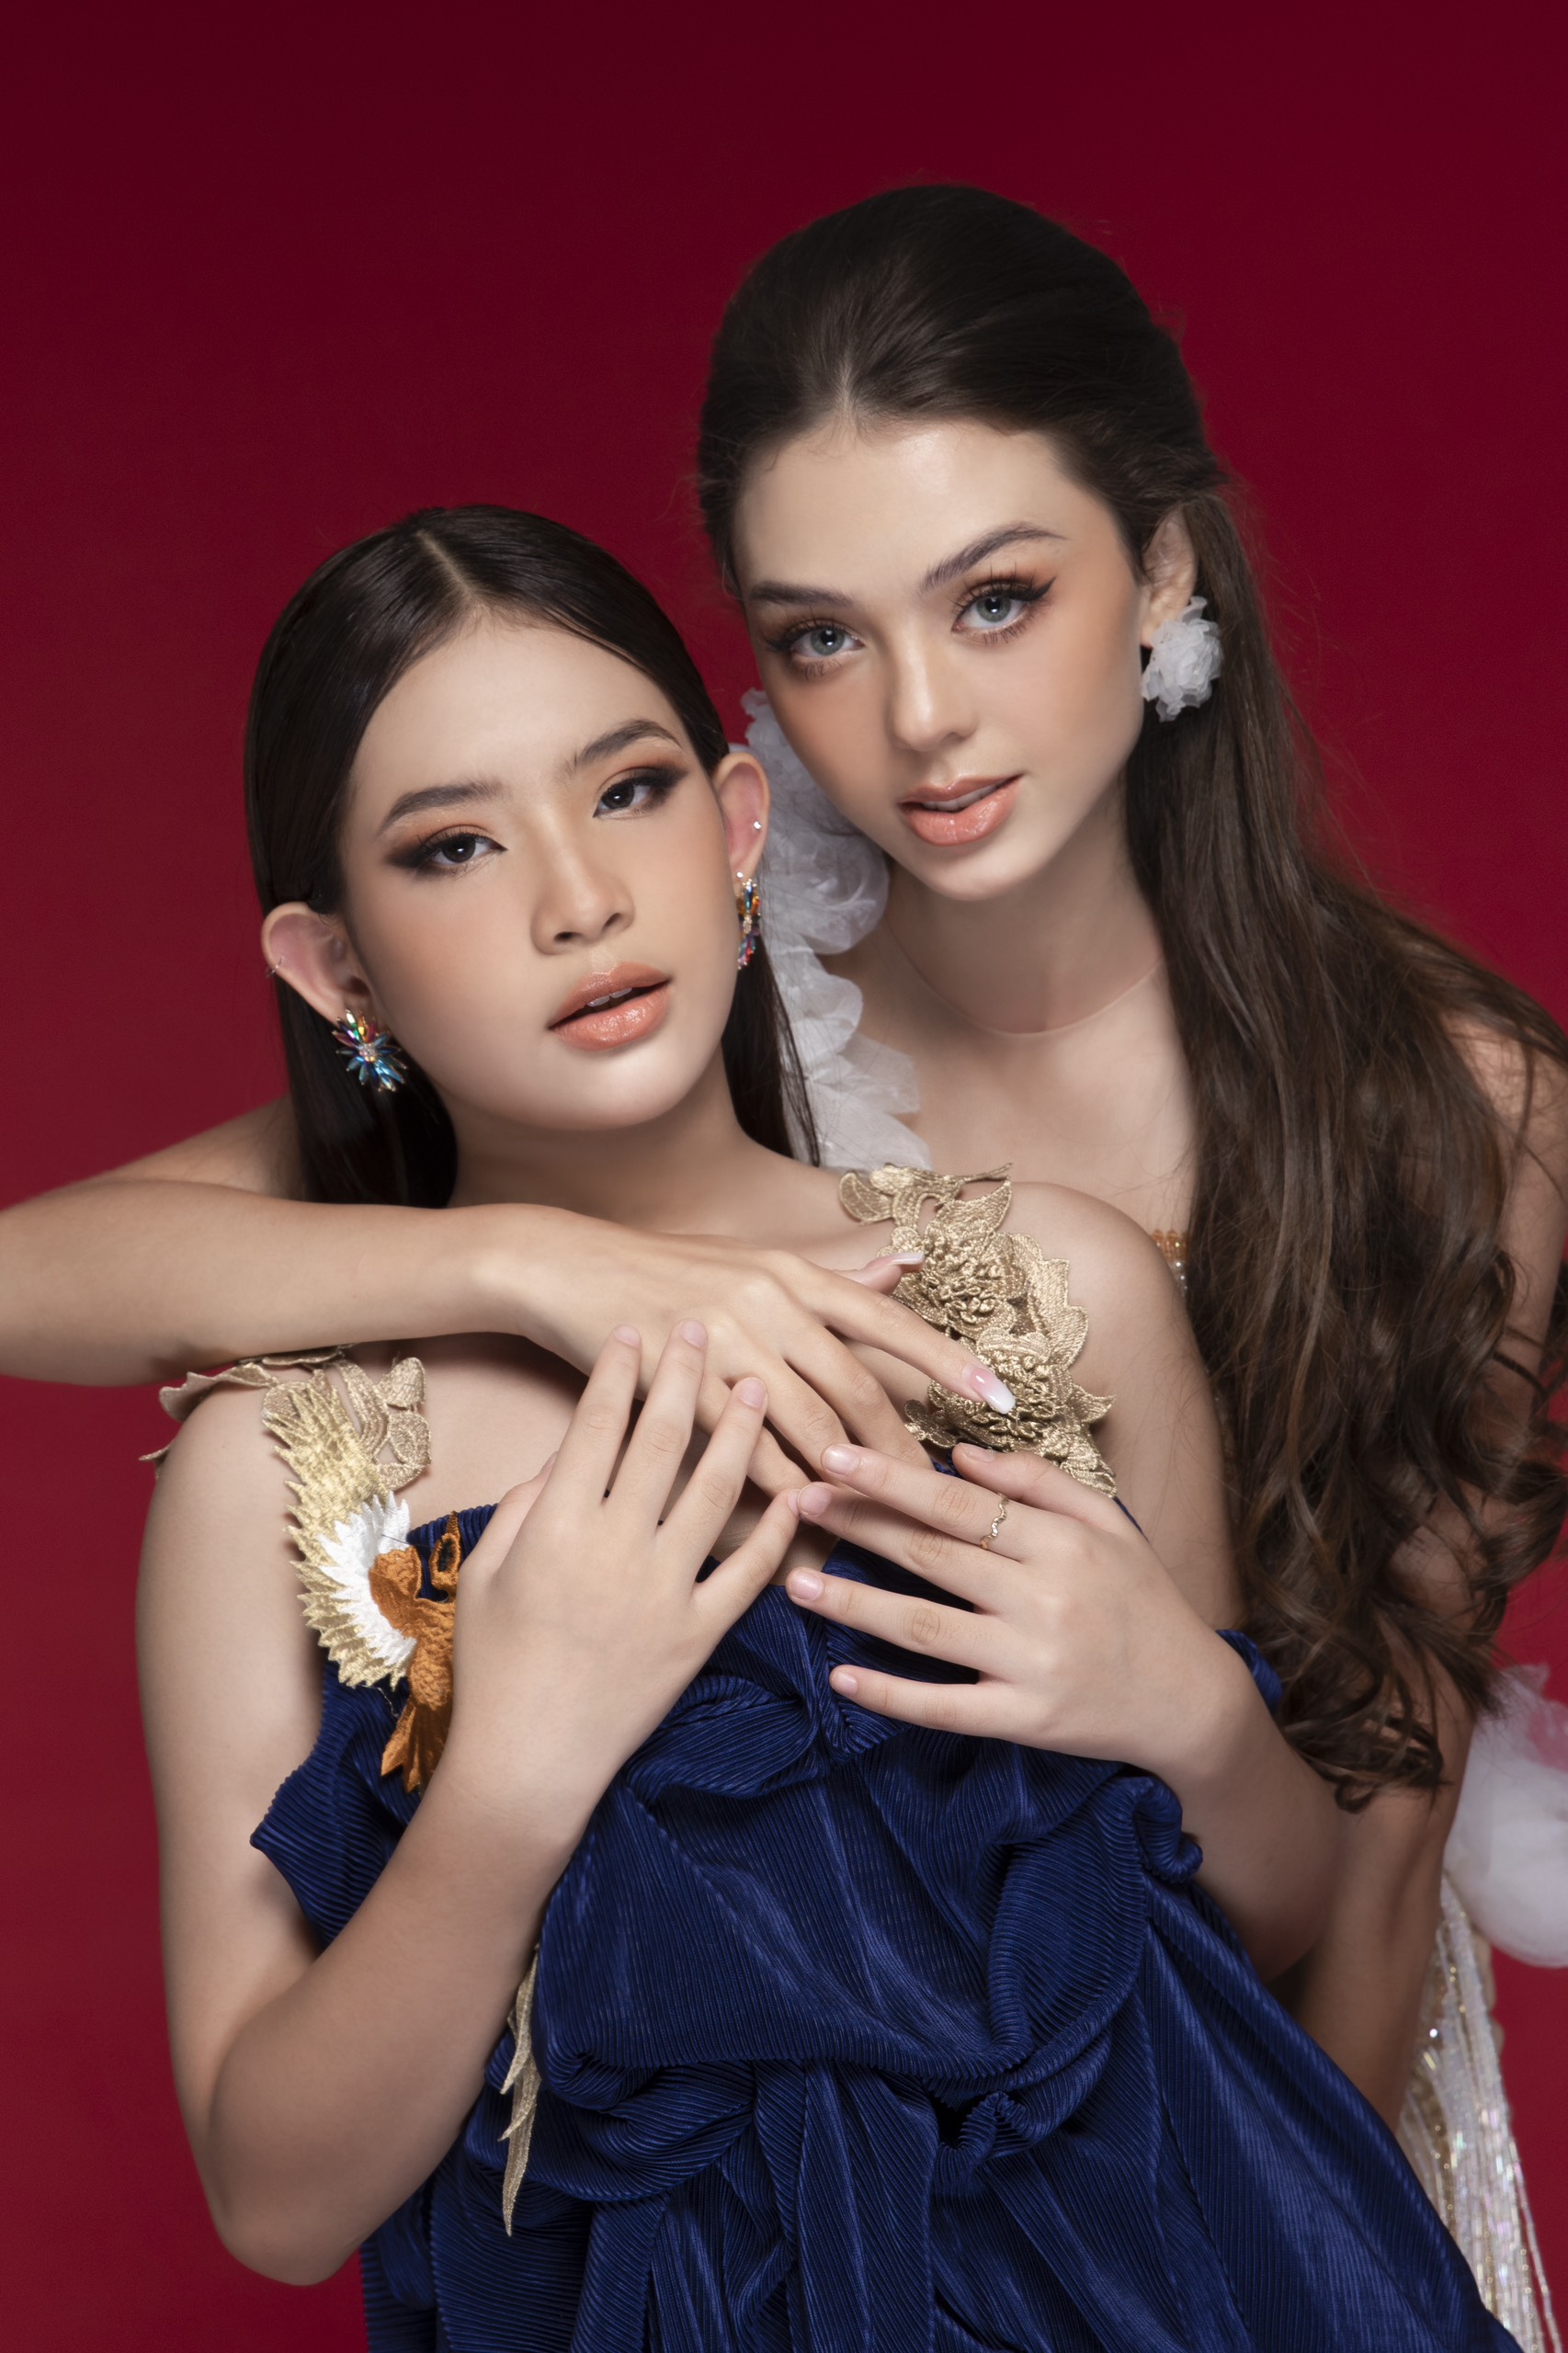 Teen model Trần Bảo Châu thần thái bên cạnh siêu mẫu quốc tế Dianka - Vợ thủ môn Bùi Tiến Dũng